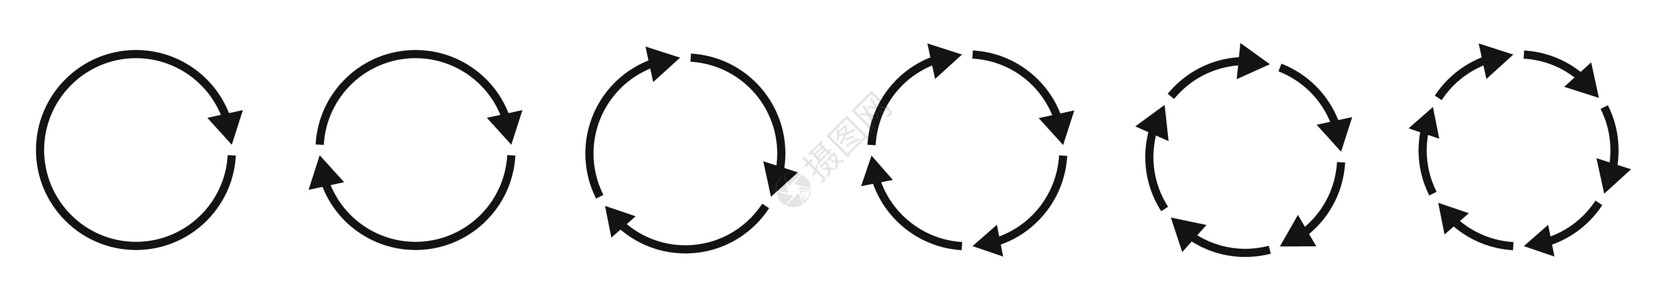 箭头图标设置 圆形箭头 黑圆箭头 矢量说明倒带运动收藏信息插图指针旋转曲线网络图表图片